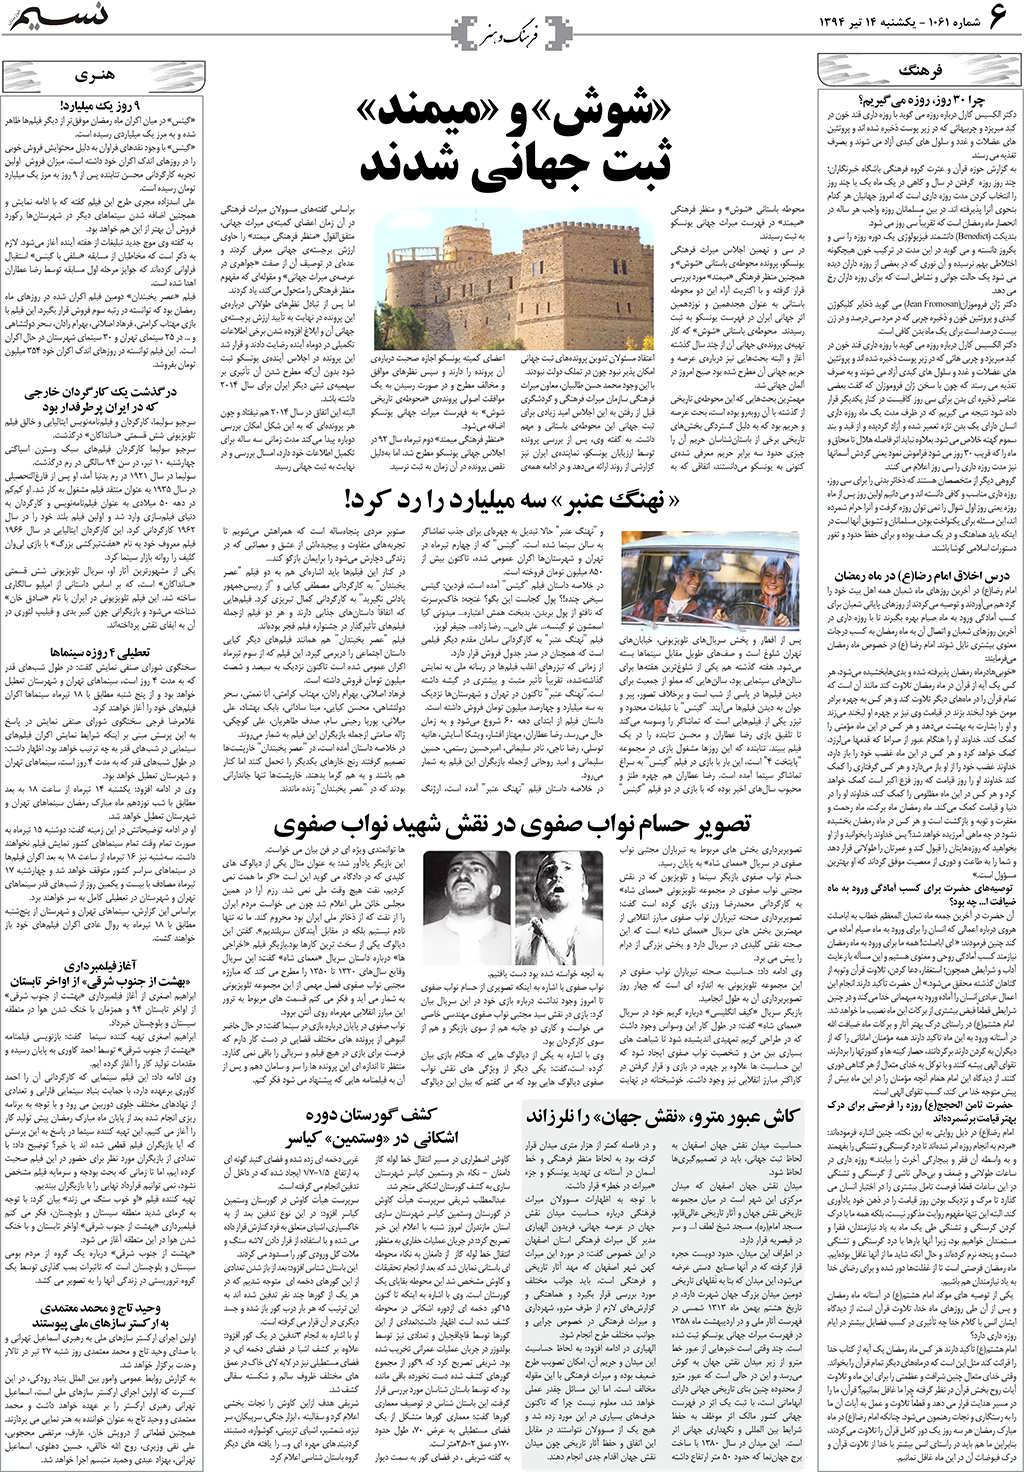 صفحه فرهنگ و هنر روزنامه نسیم شماره 1061